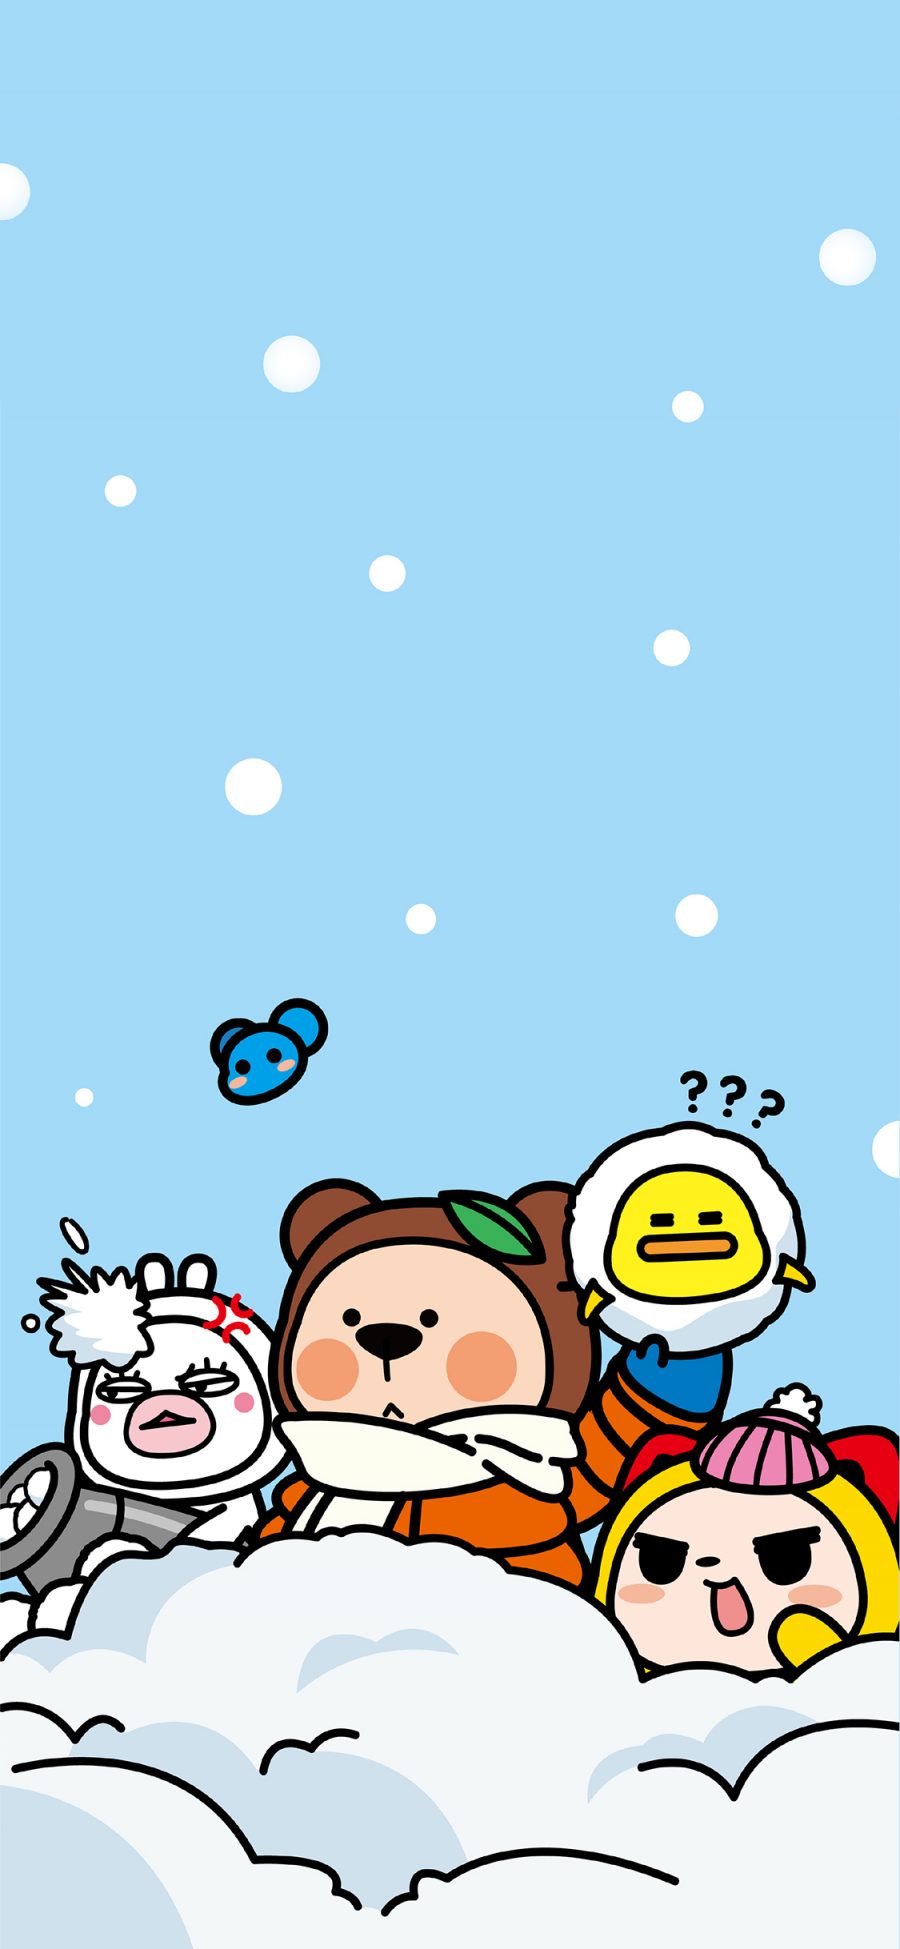 [2436×1125]夏萌猫 冬天 雪地 下雪 苹果手机动漫壁纸图片